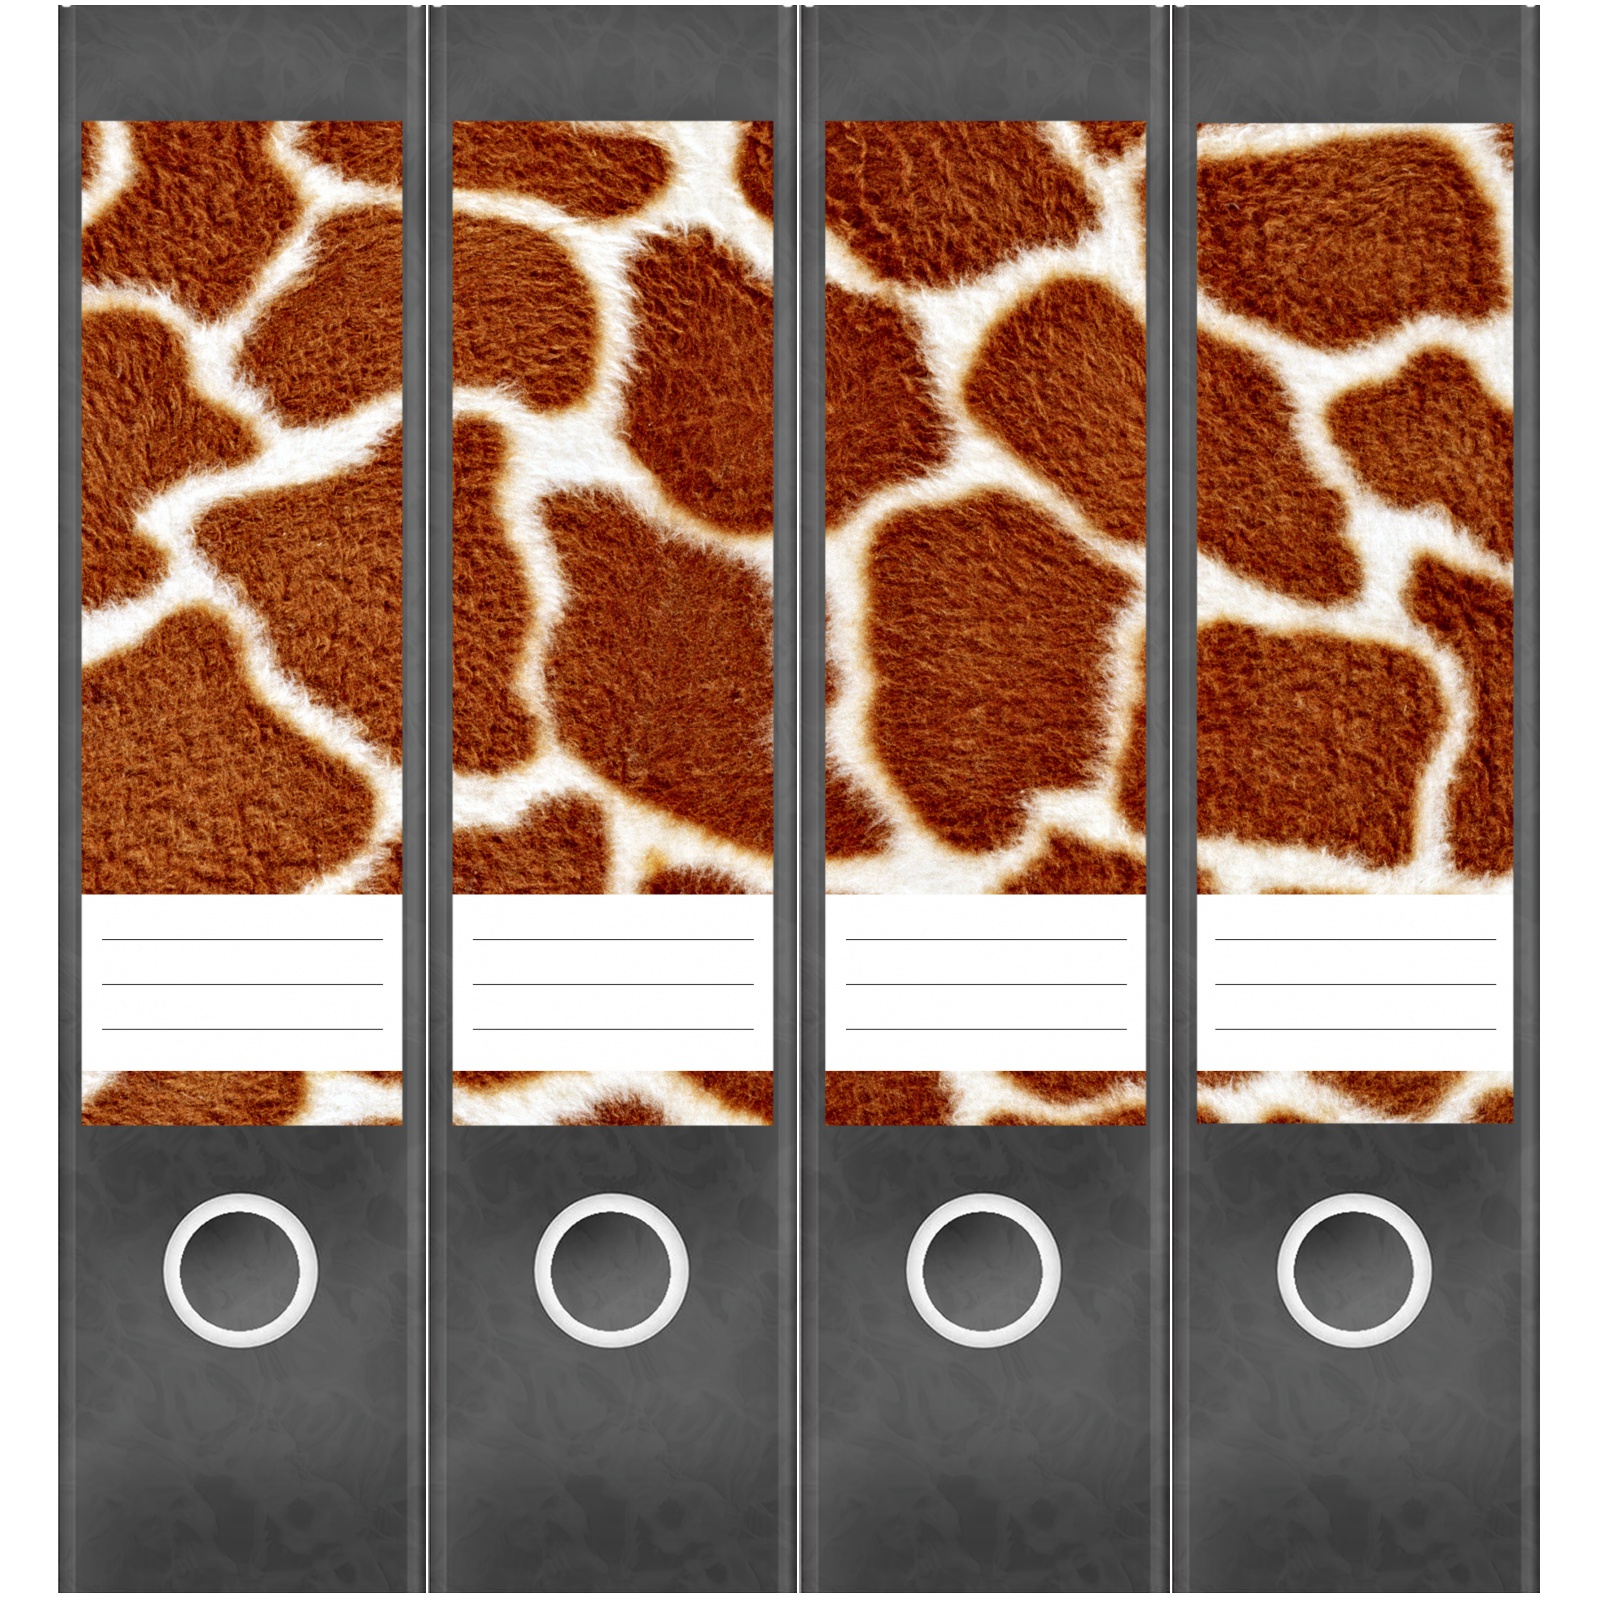 Ordnerrücken breit 4er Set Ordner Giraffe Leopard Afrika Aufkleber Etiketten Deko 446 